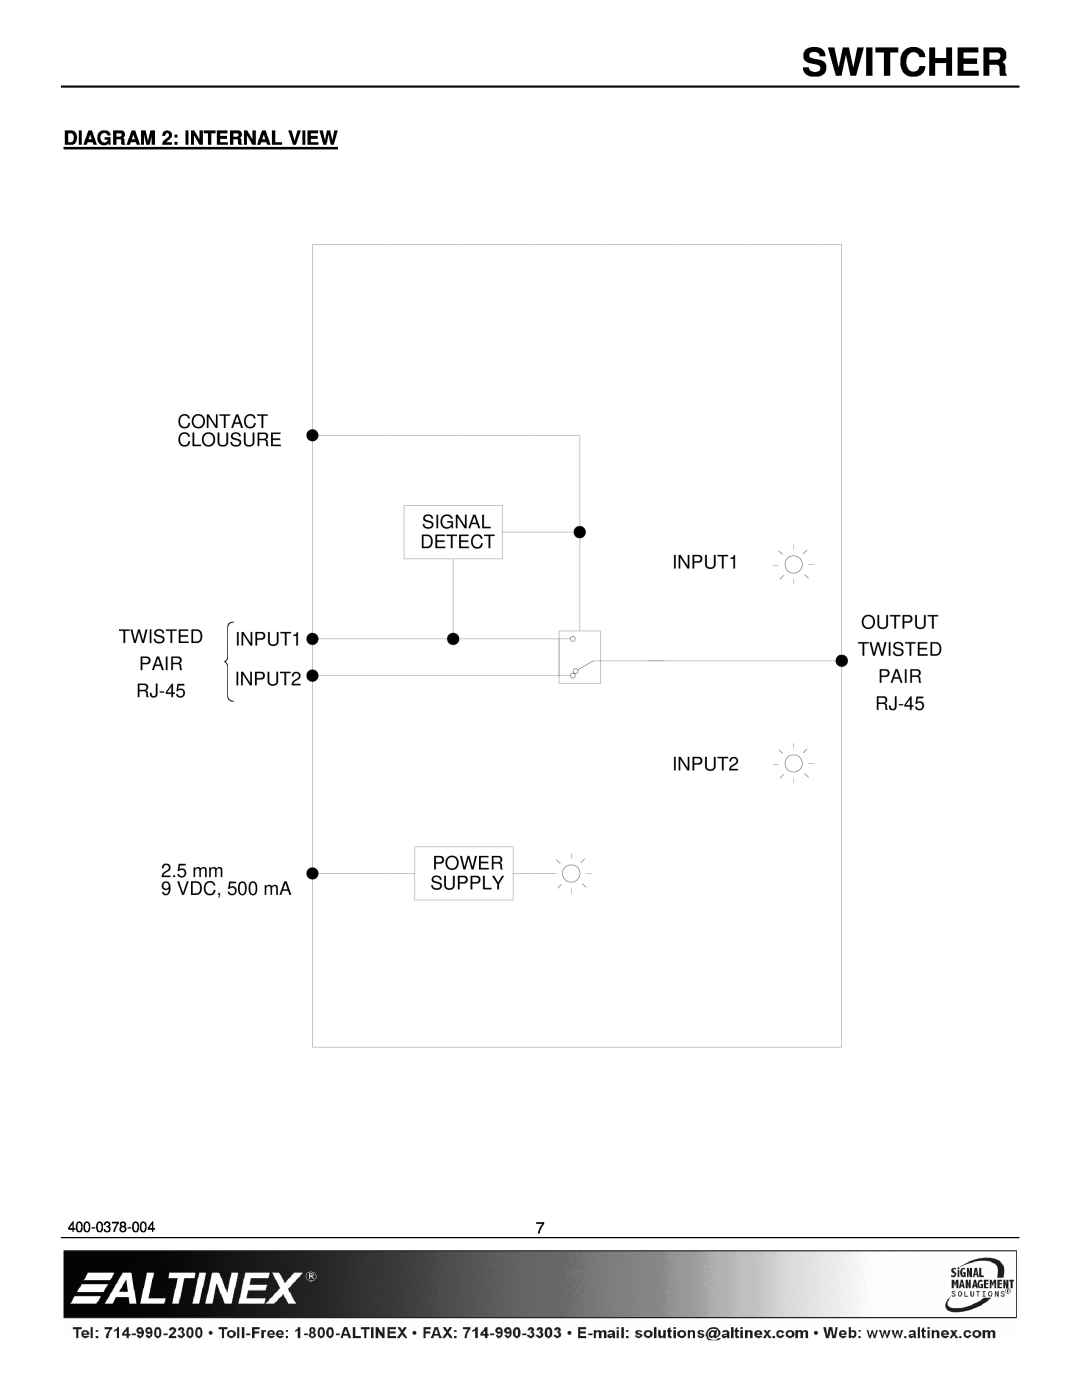 Altinex SW1956CT manual DIAGRAM 2 INTERNAL VIEW, Switcher 